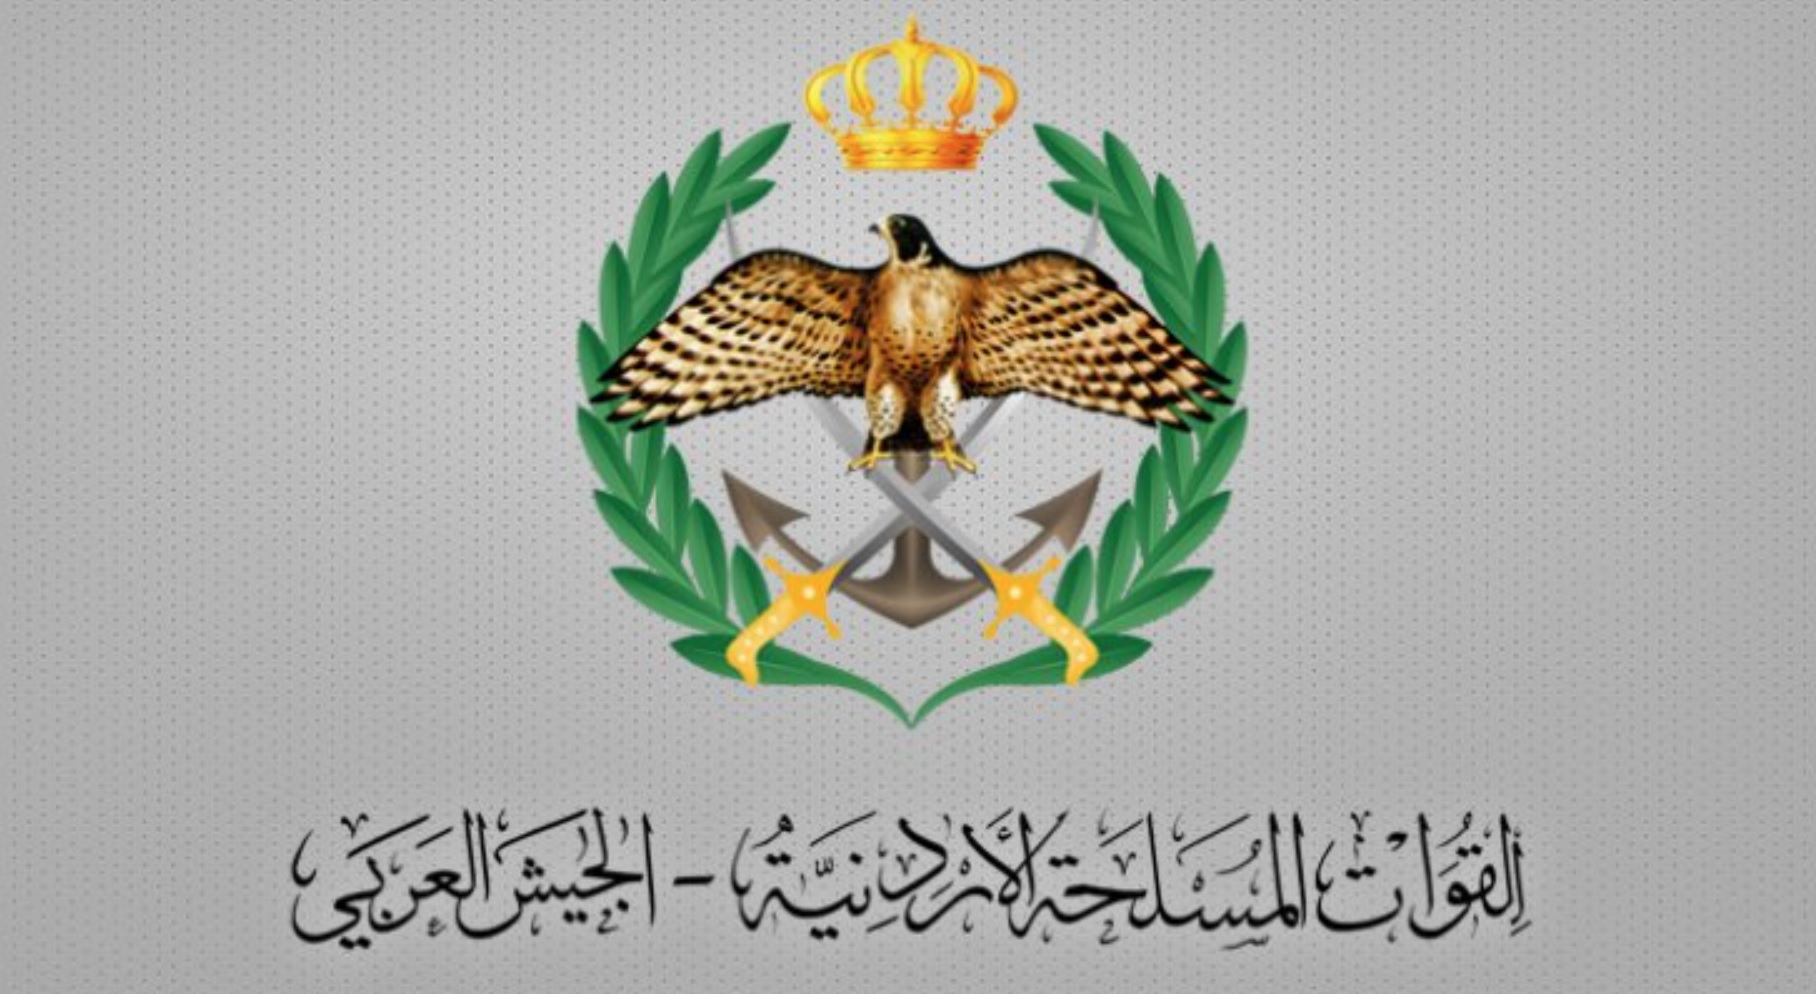 الجيش الأردني يعلن إسقاط طائرة مسيرة محملة بمواد متفجرة